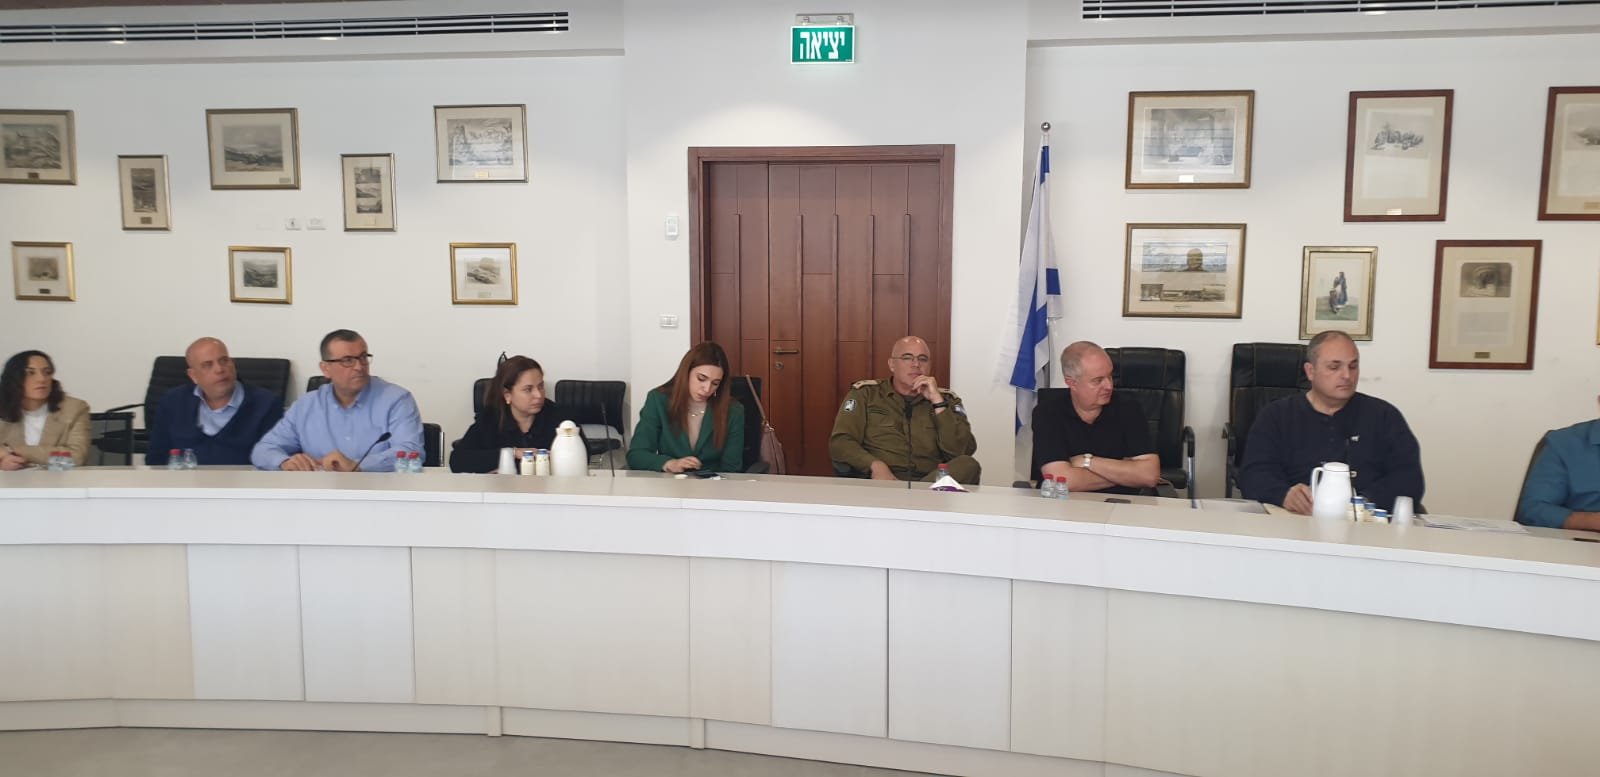 لبحث الجاهزية للطوارئ| وزارة الصحة تلتقي رؤساء سلطات محلية في بلدية الناصرة-3